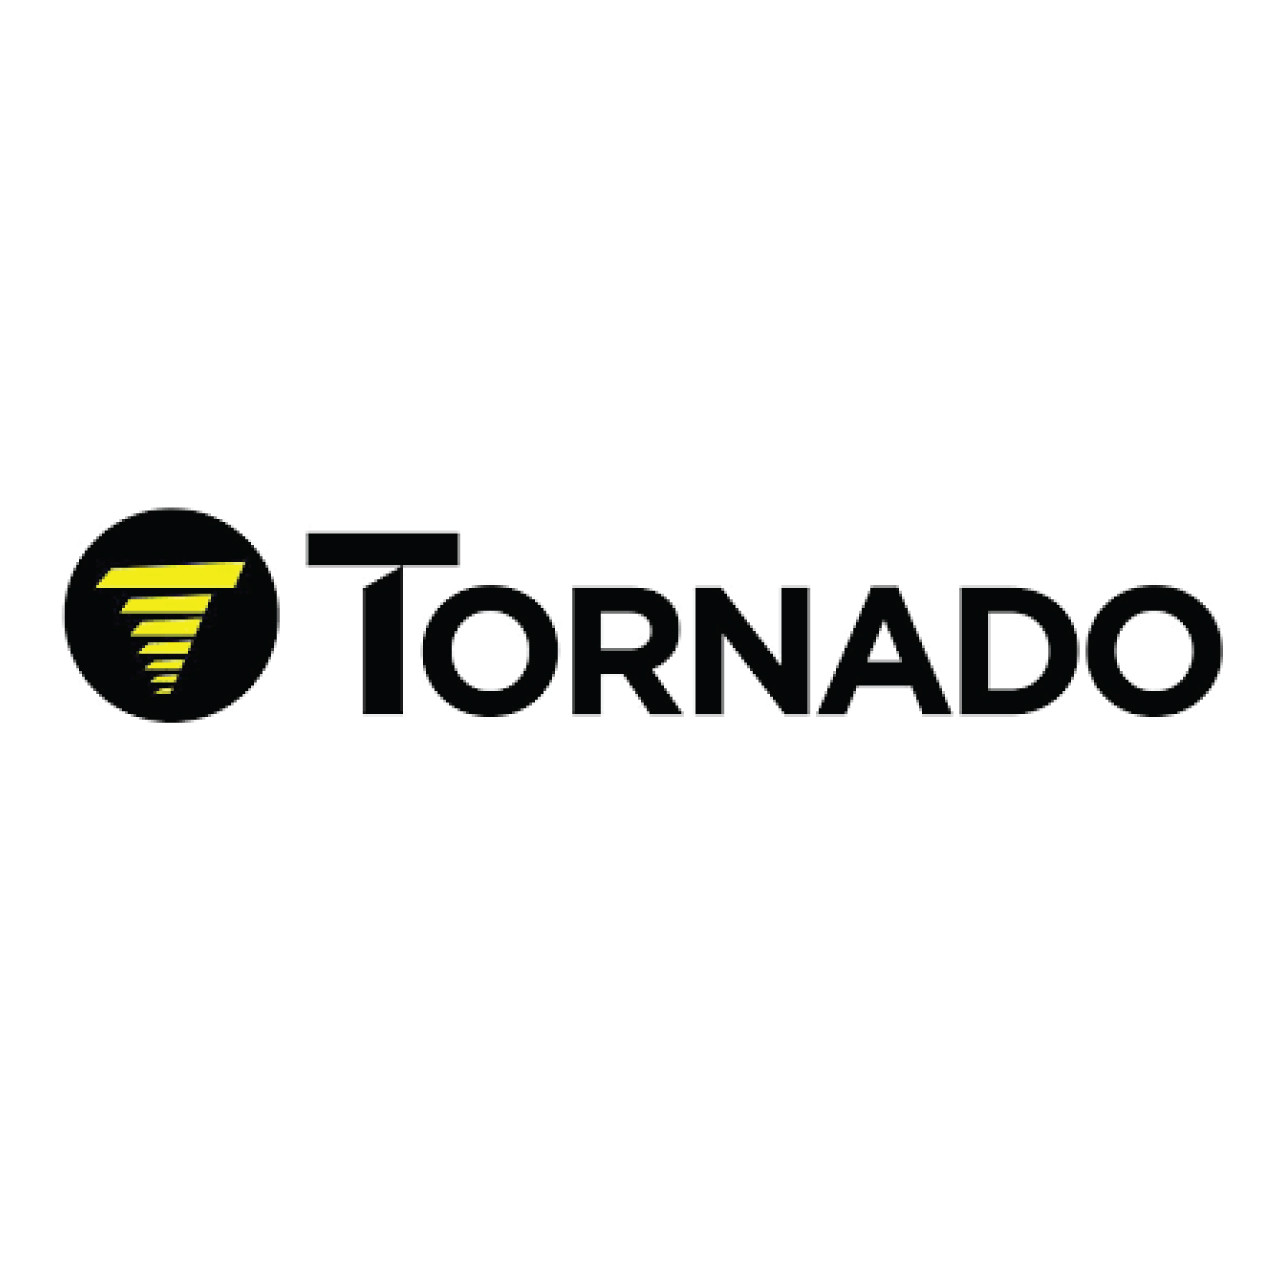 02-4449-0000, Tornado 02-4449-0000, Tornado BRASS LOCKNUT 1/8 IN BSP, Tornado parts